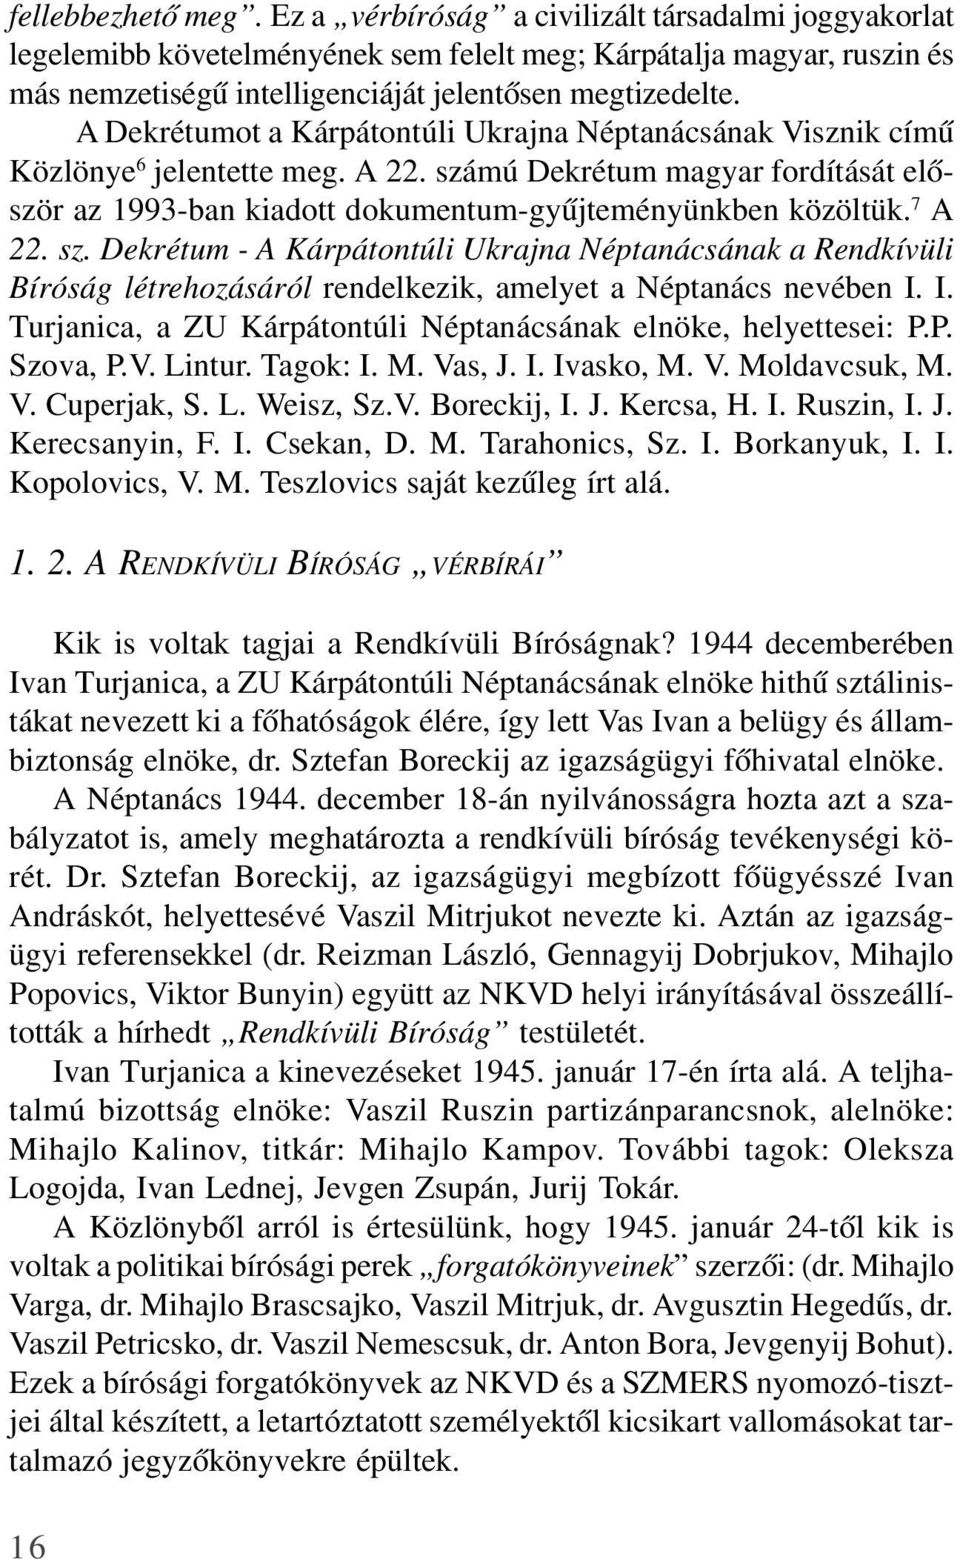 A Dekrétumot a Kárpátontúli Ukrajna Néptanácsának Visznik címû Közlönye 6 jelentette meg. A 22. számú Dekrétum magyar fordítását elõször az 1993-ban kiadott dokumentum-gyûjteményünkben közöltük.